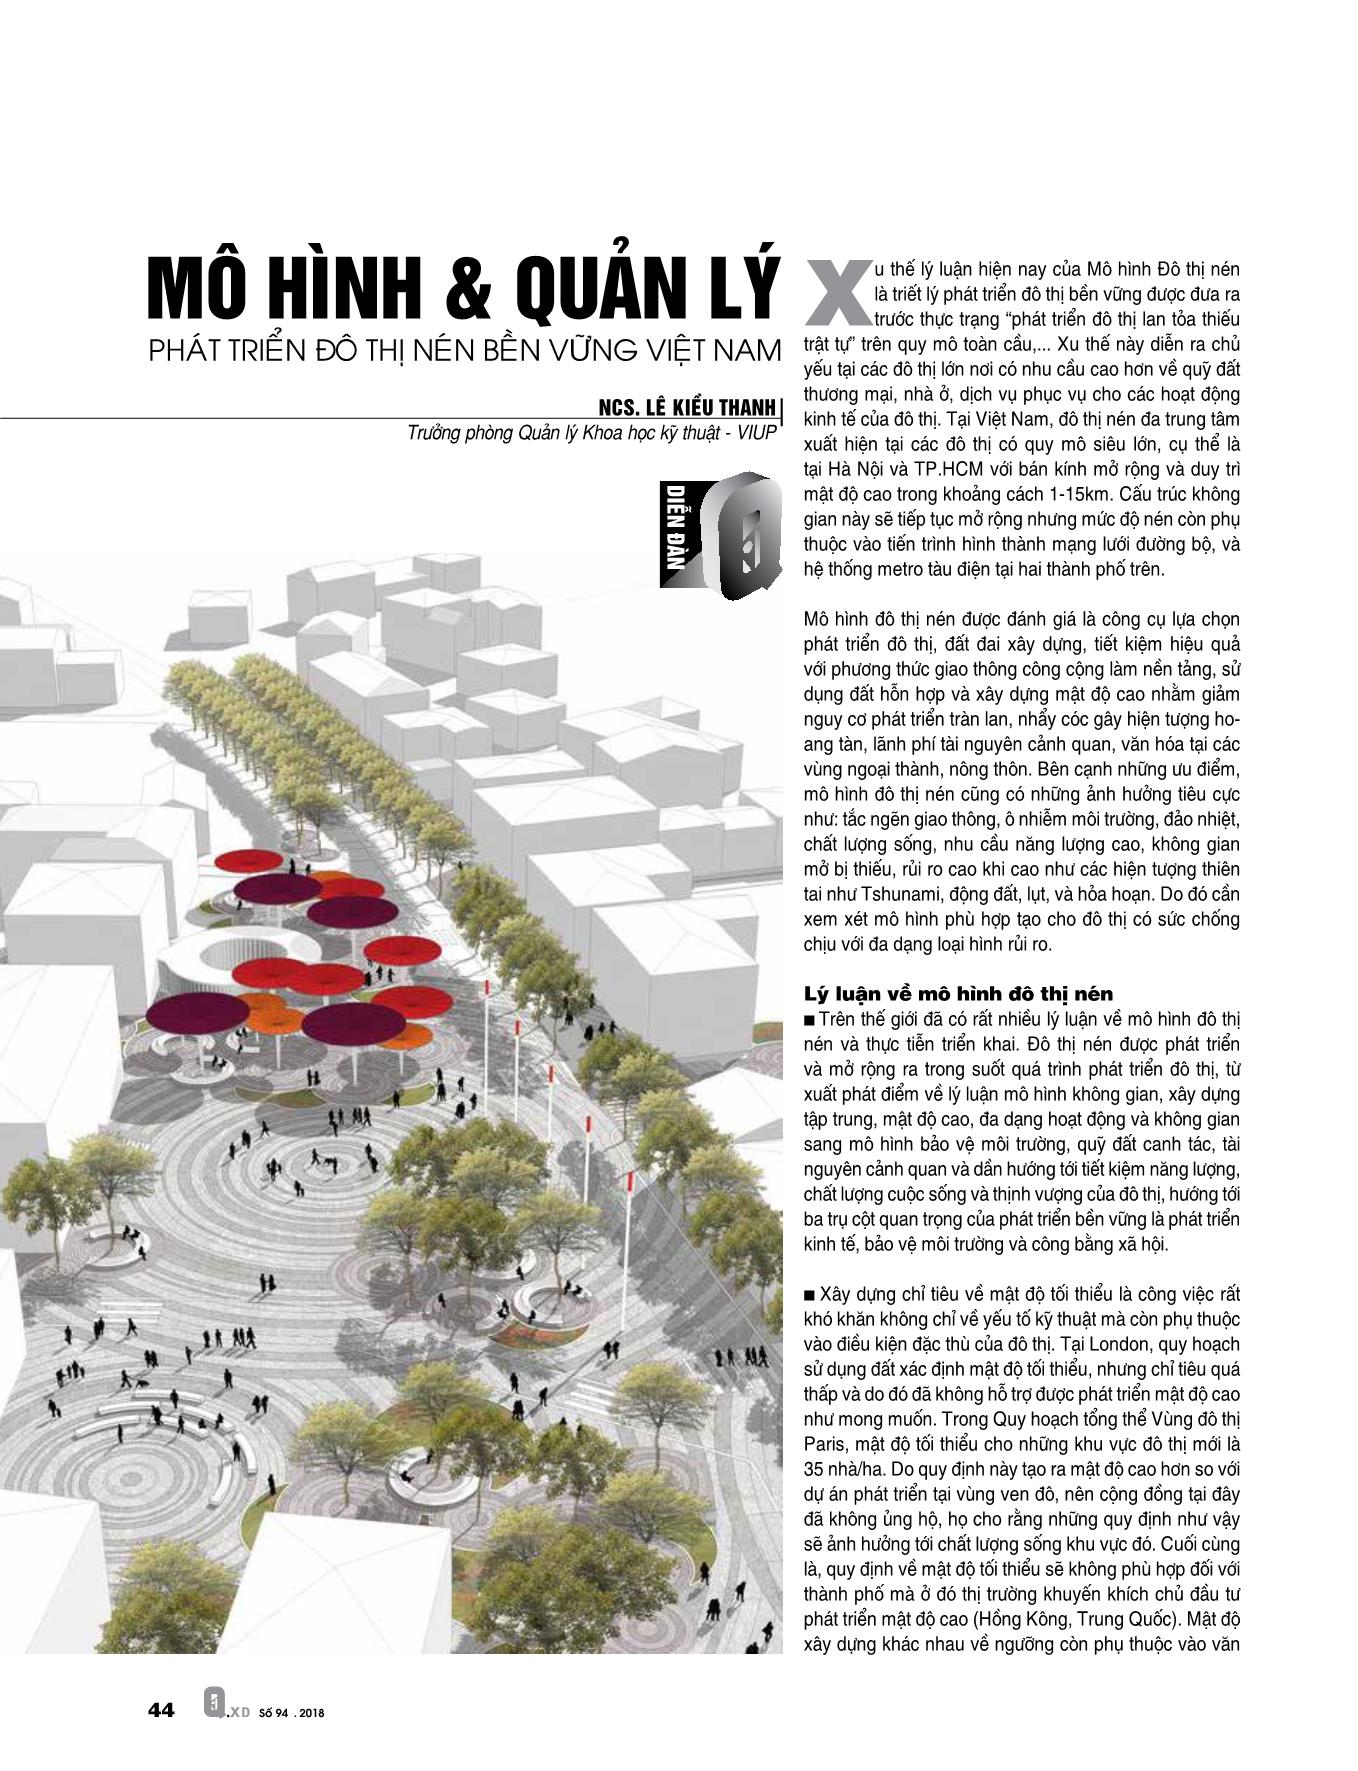 Mô hình & quản lý phát triển đô thị nén bền vững Việt Nam trang 1